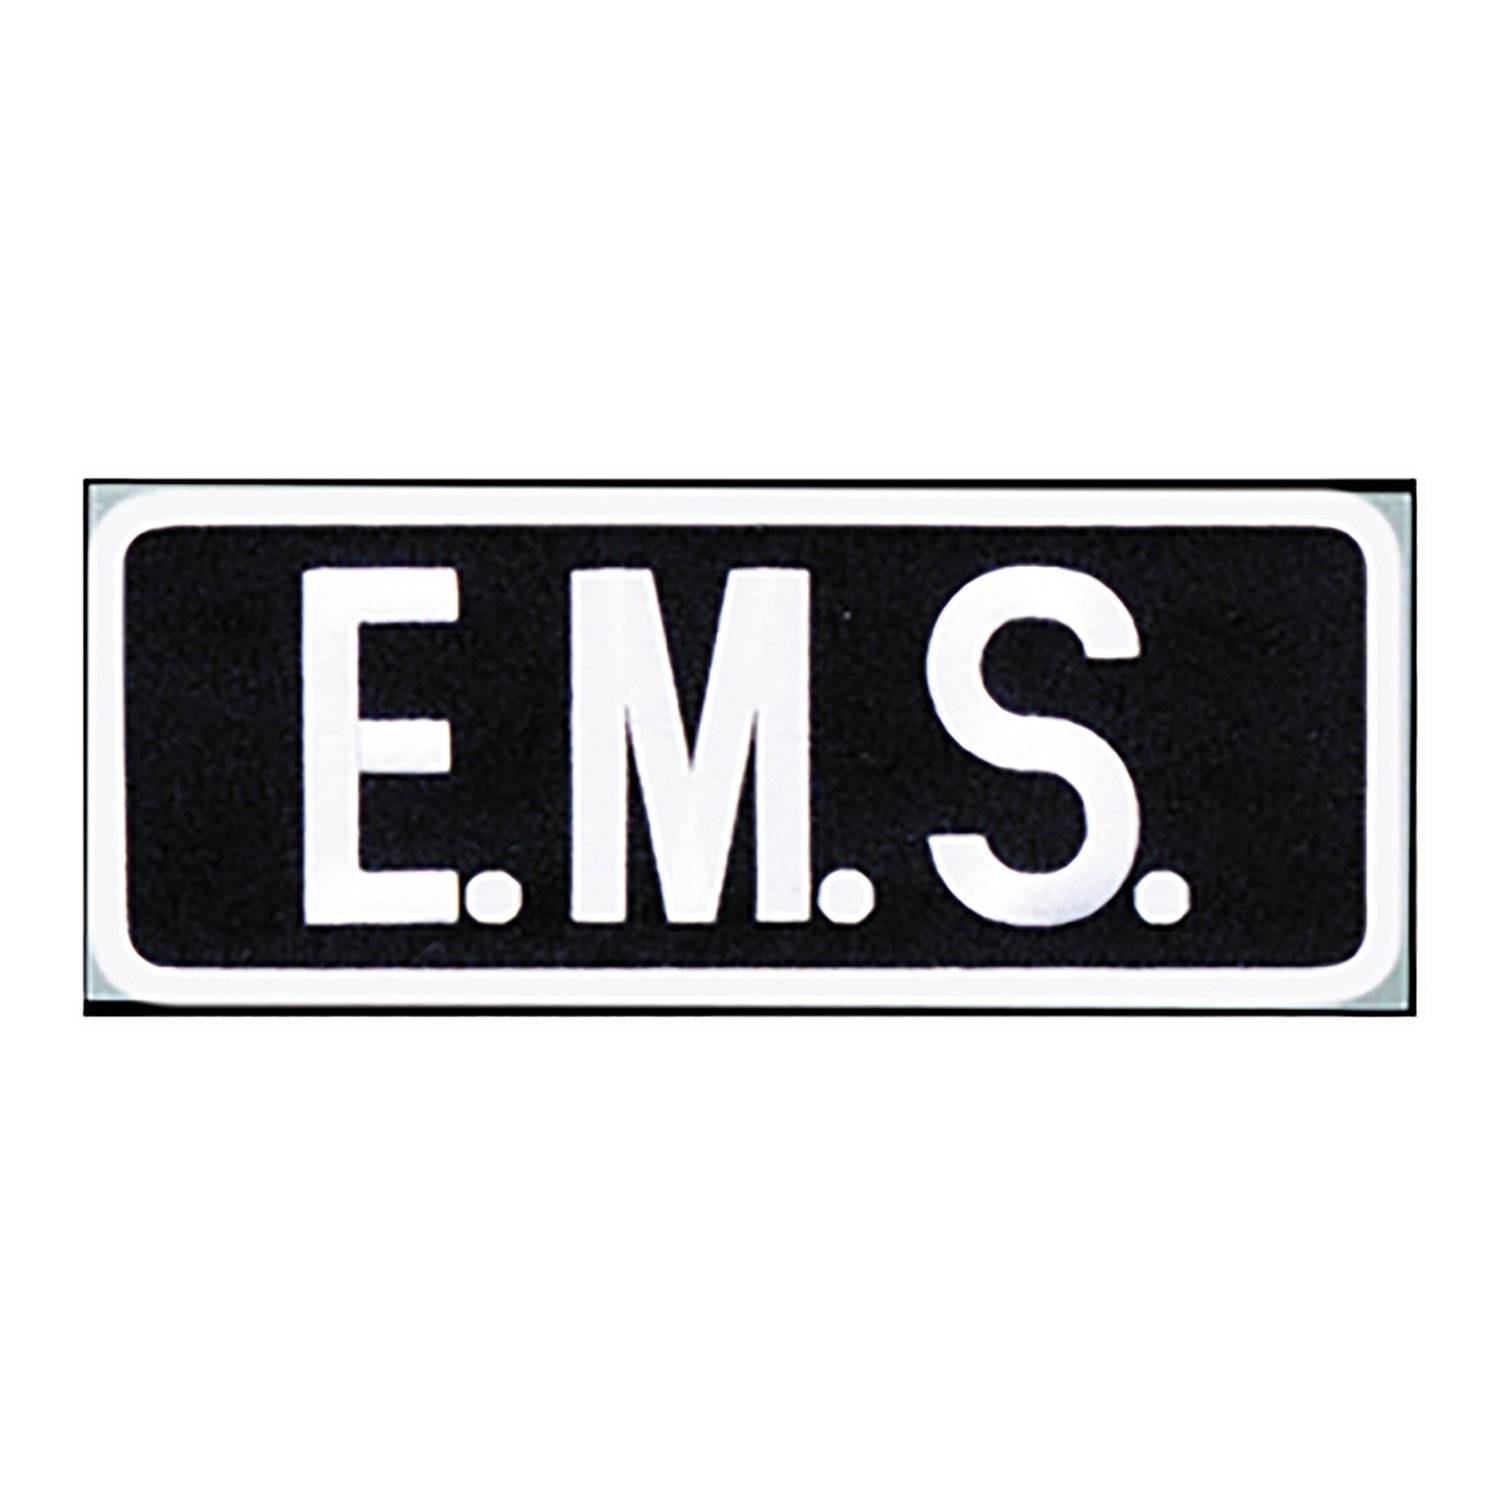 Premier Emblems EMS Shields